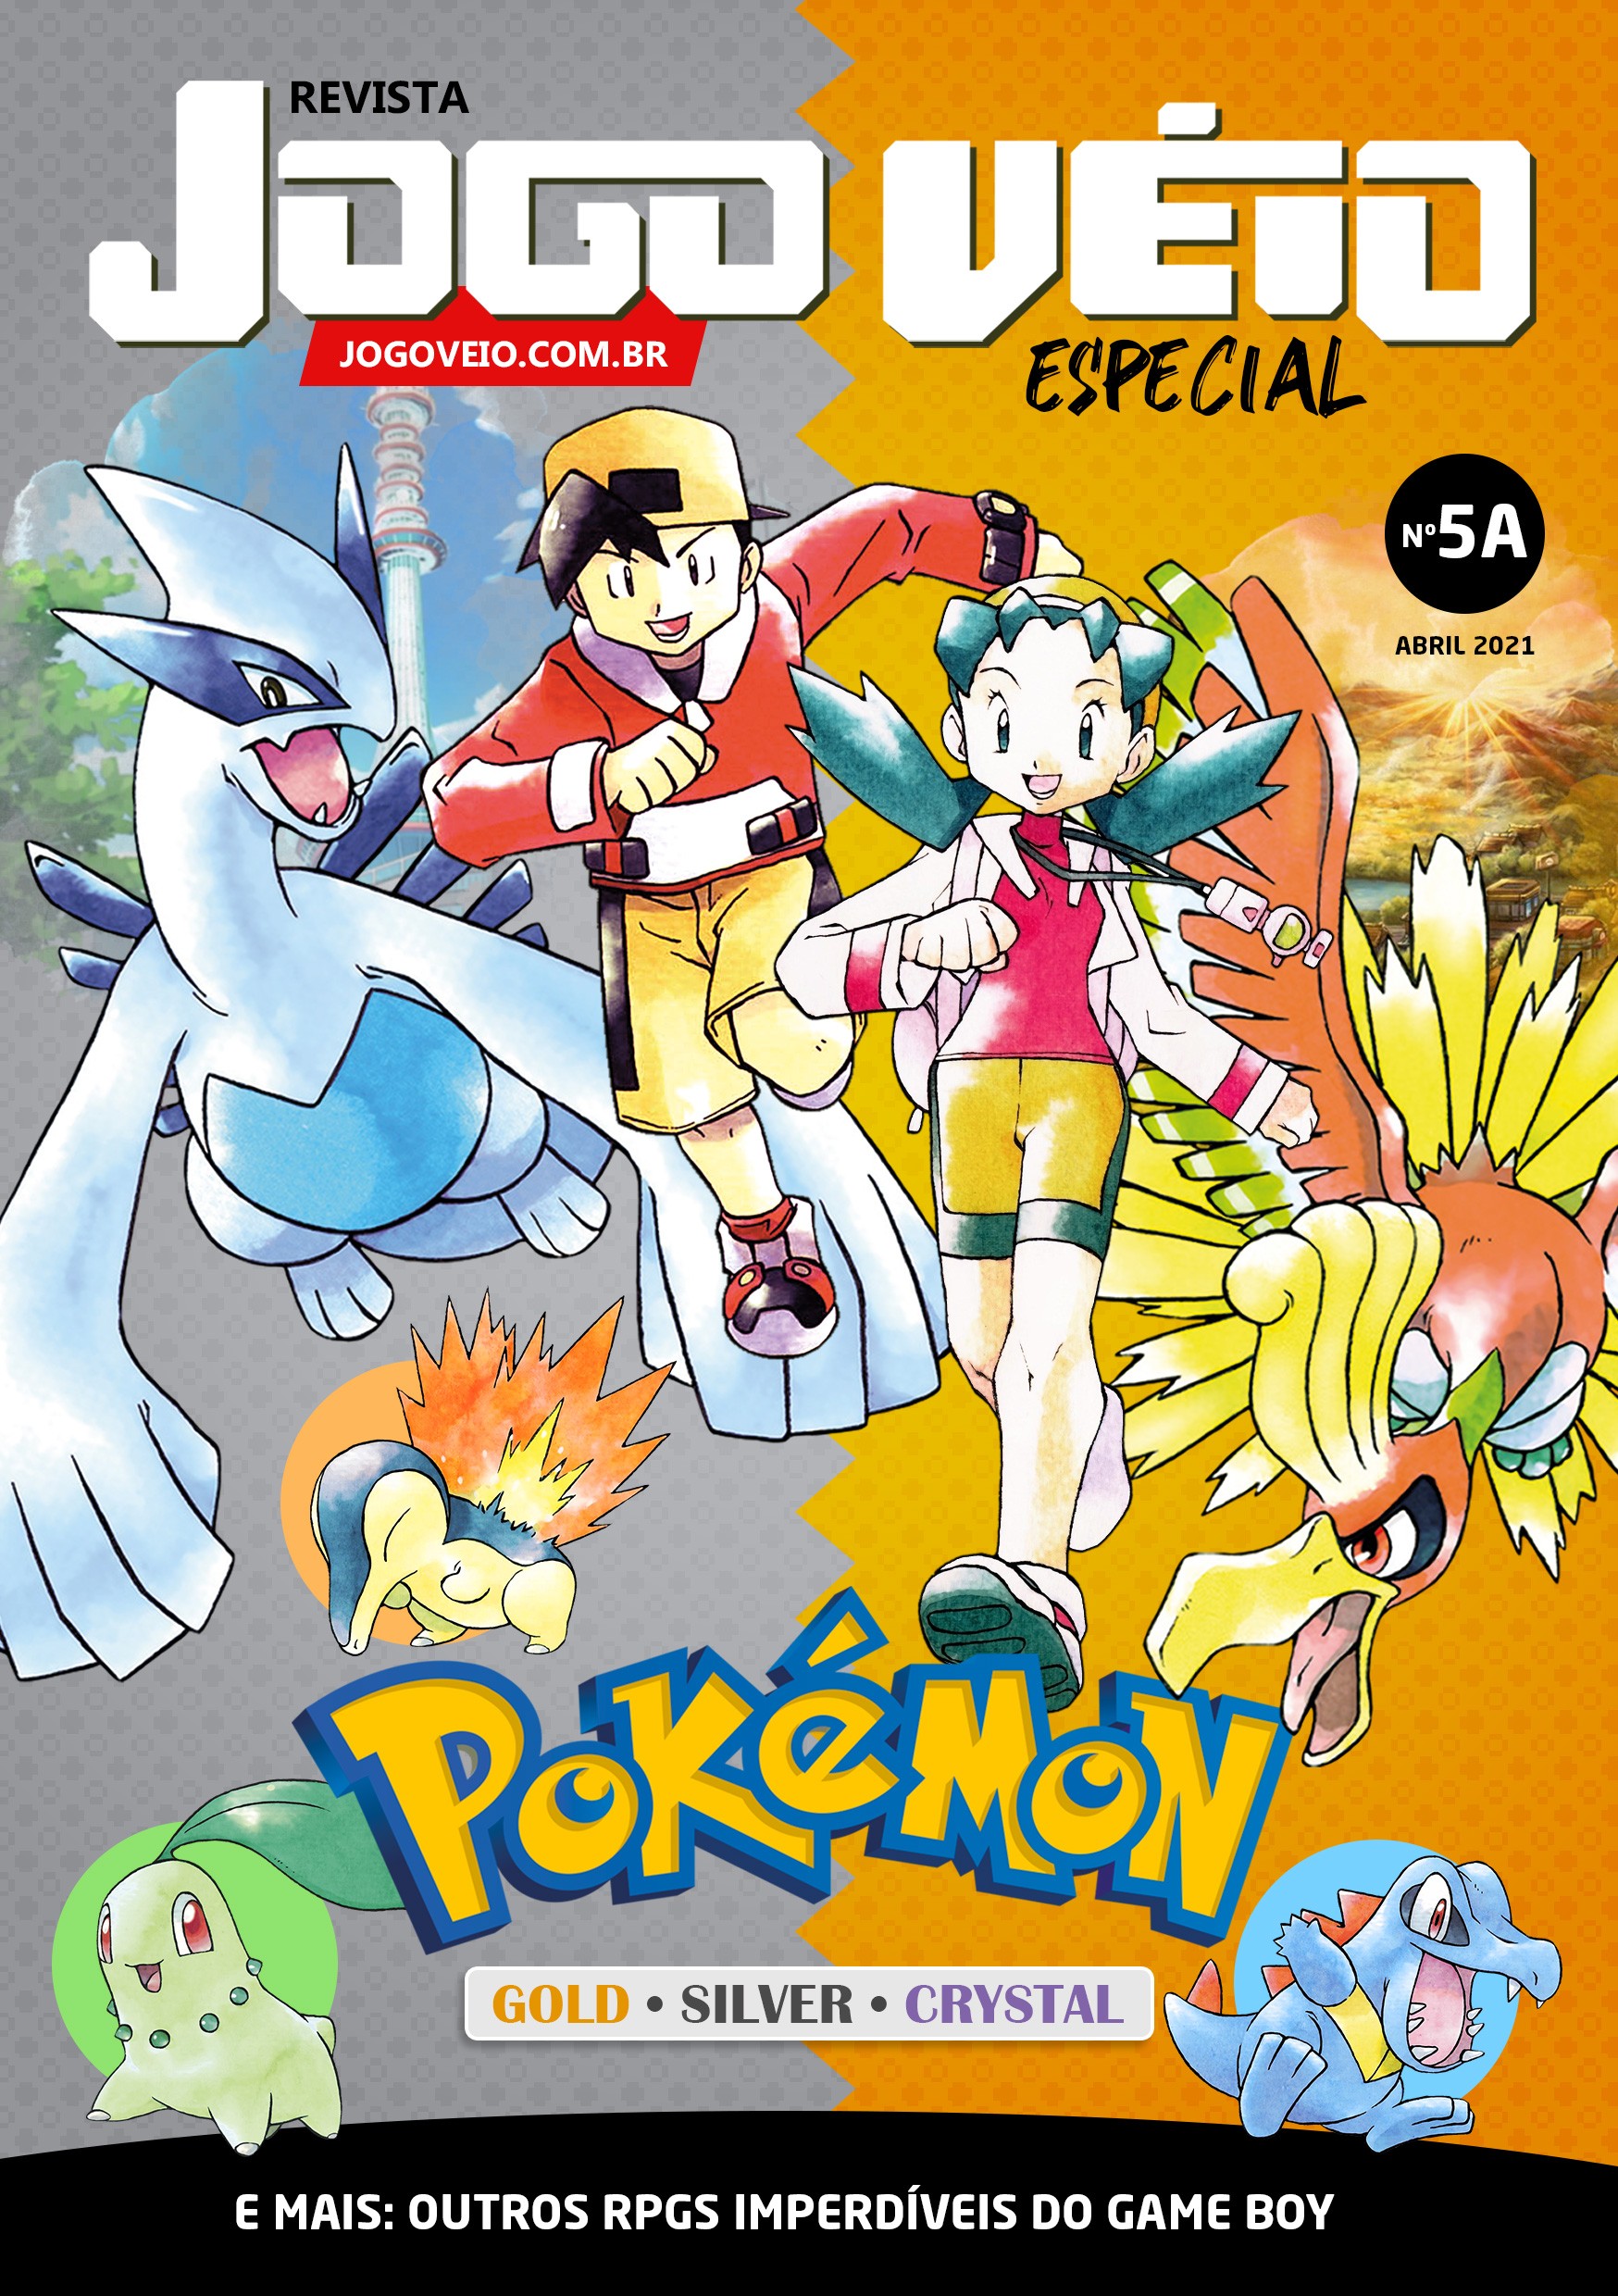 Pokémon Gold, Silver e Crystal: veja curiosidades e diferenças dos